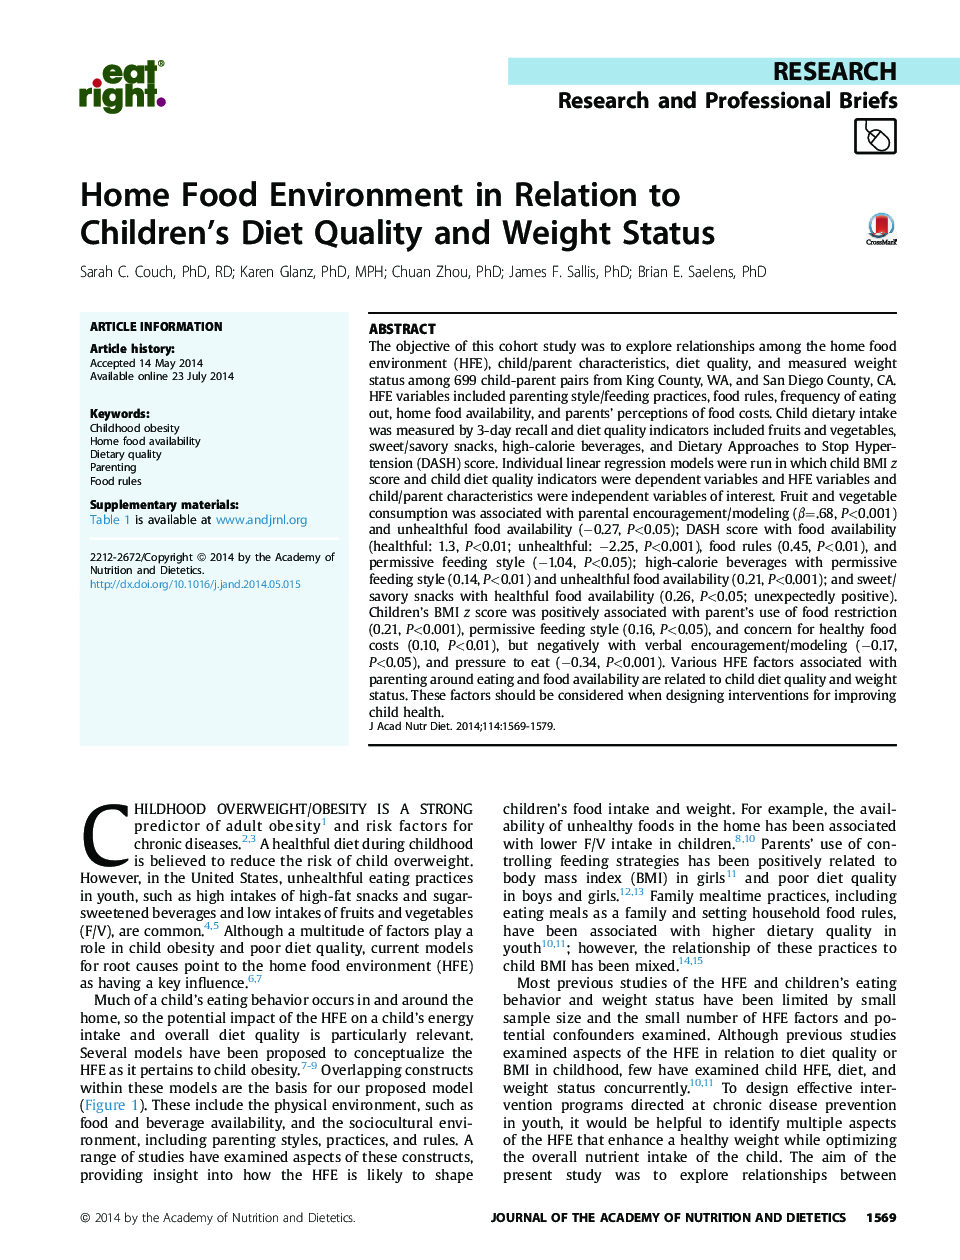 محیط غذای خانه در رابطه با رژیم غذایی کودکان؟ وضعیت کیفیت و وزن 